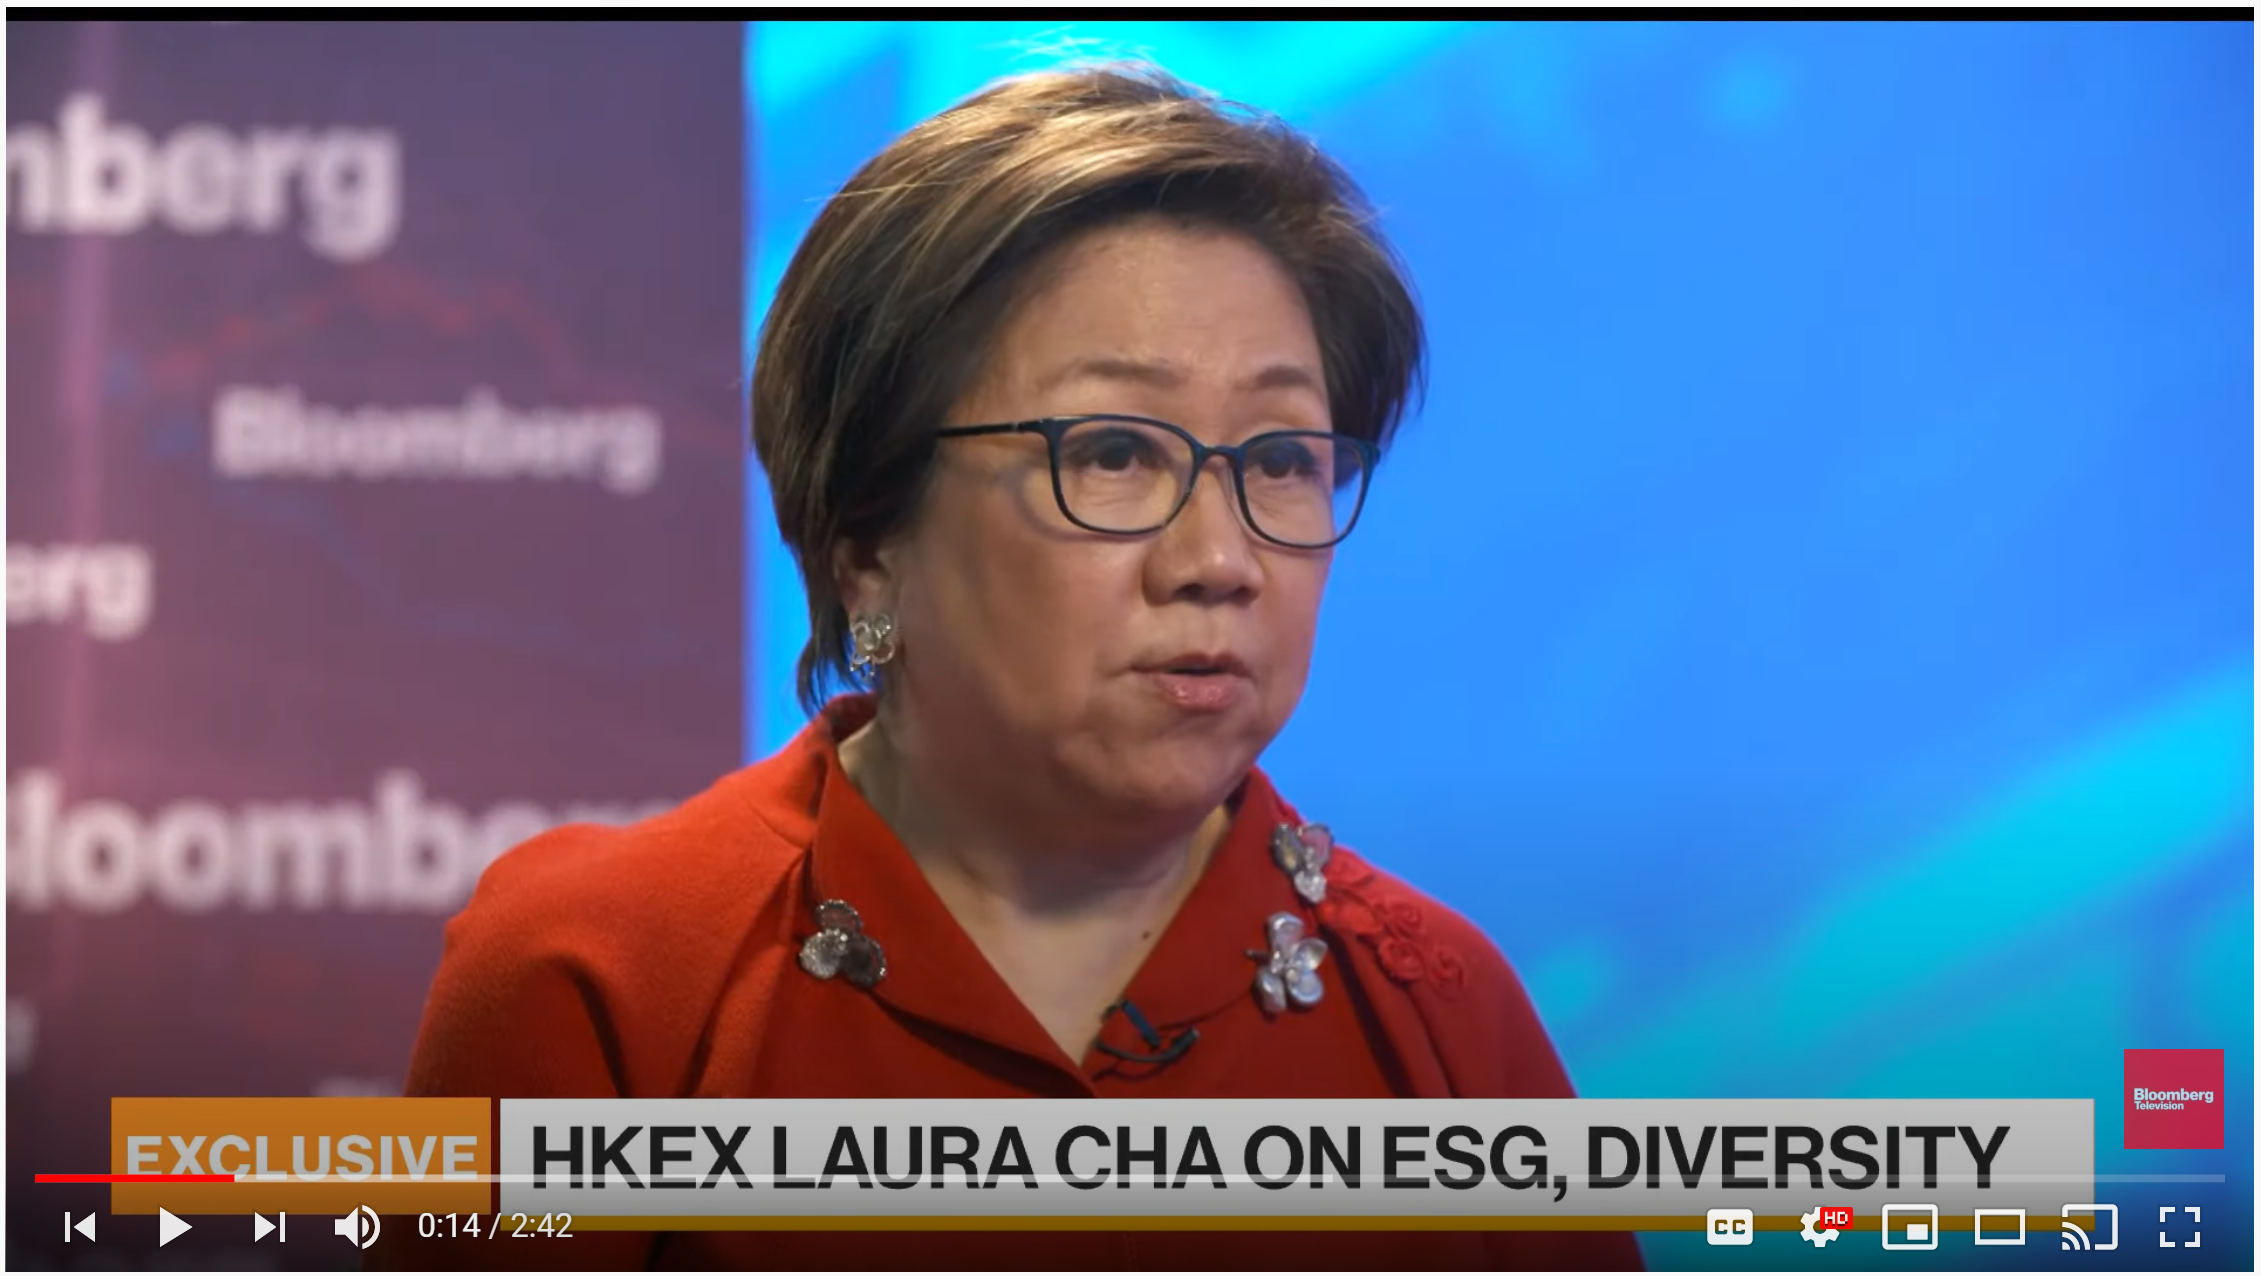 HKEX Chairman on ESG, Diversity